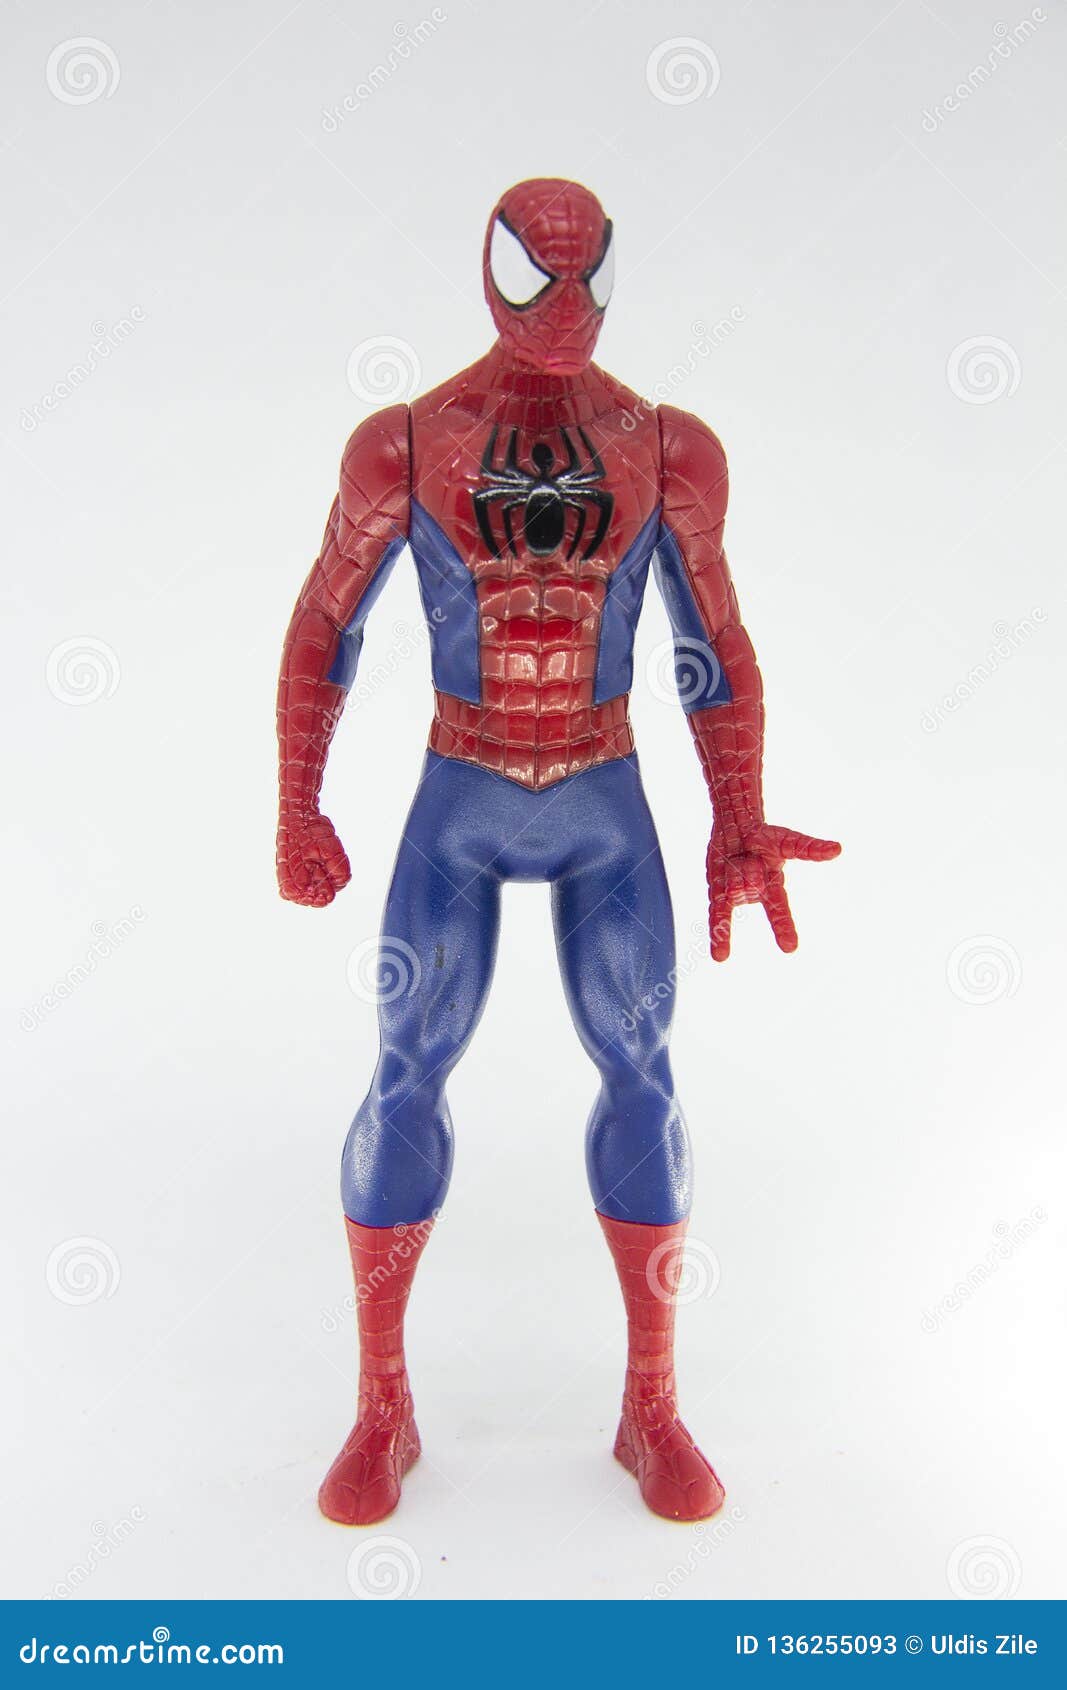 Đồ chơi Spider Man cổ điển cách điệu trên nền trắng: Hãy nhớ lại kỷ niệm thơ ấu bằng những chiếc đồ chơi Spider Man cổ điển, cách điệu trên nền trắng. Đây thực sự là một món quà đặc biệt dành cho những ai ham mê siêu anh hùng Marvel. Mọi thứ sẽ vô cùng đặc biệt và lý tưởng khi xem chúng bằng cách click vào ảnh.